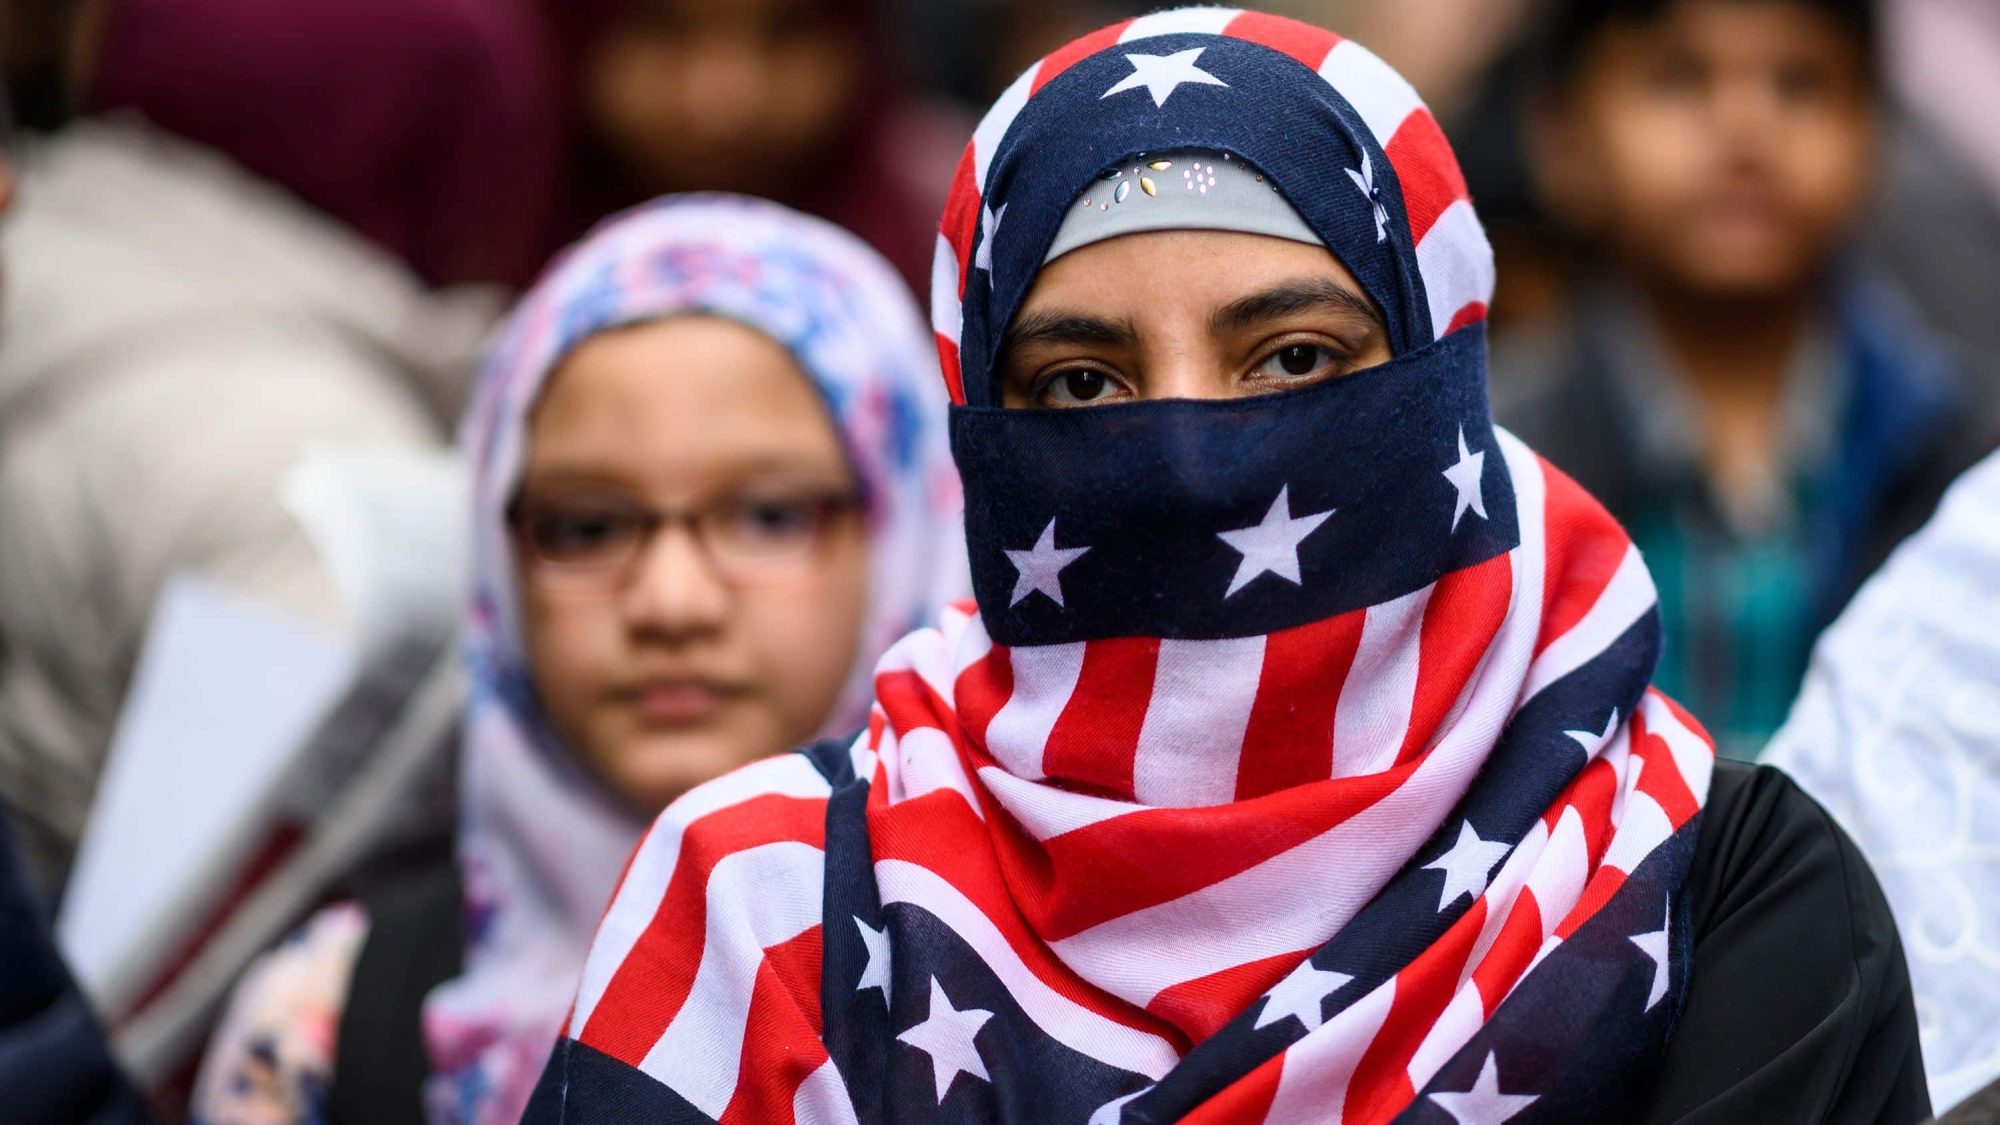 المسلمة في أمريكا تتعامل مع الحجاب كـ”خيار” وتعبير عن “التحرر” watan.com